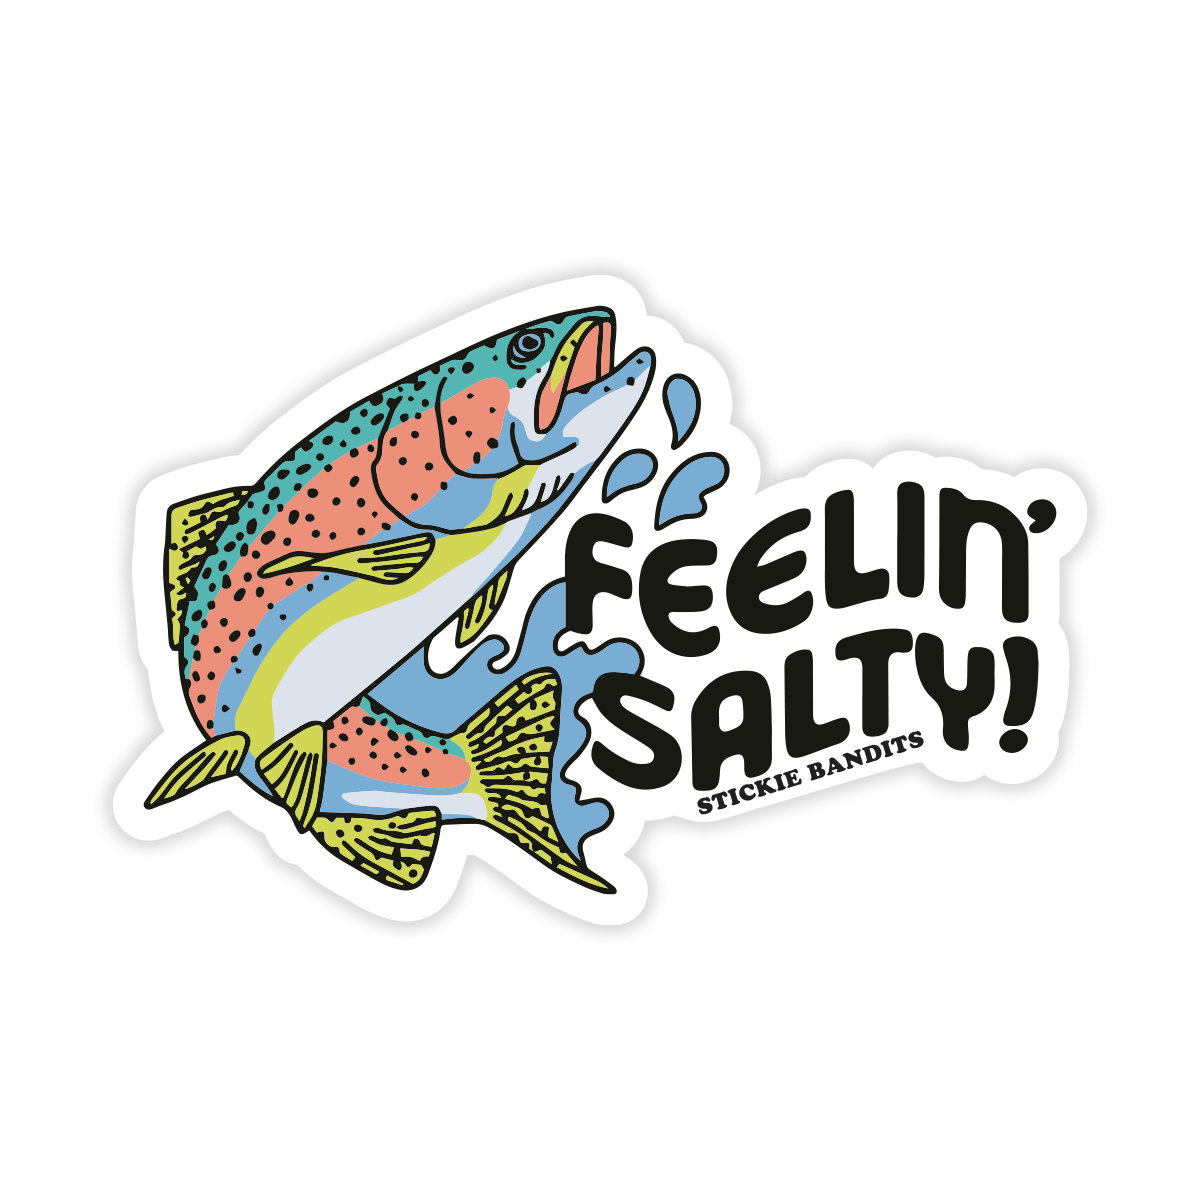 Salty Sticker